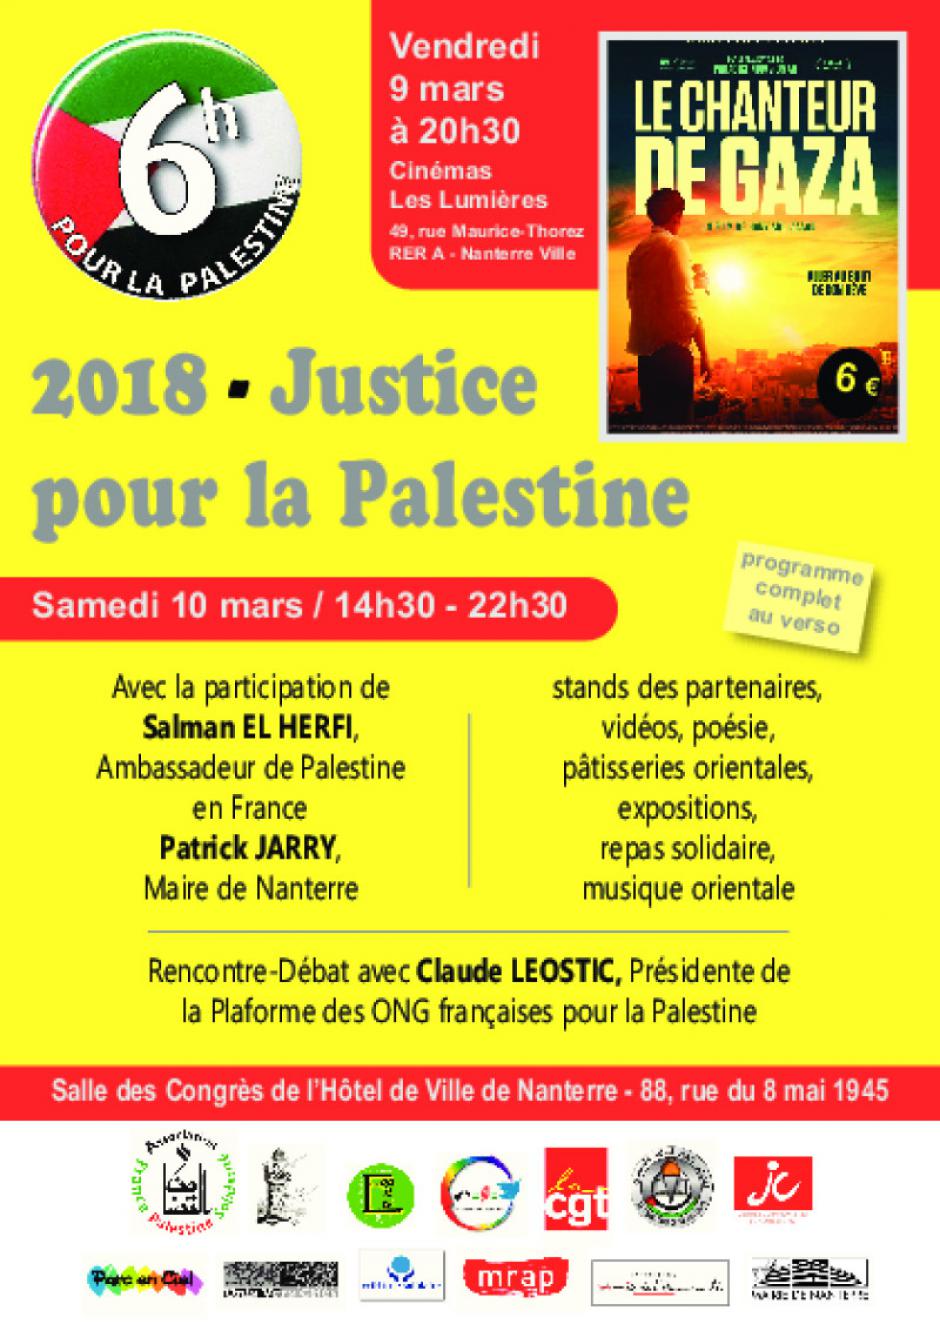 2018-Justice pour la Palestine